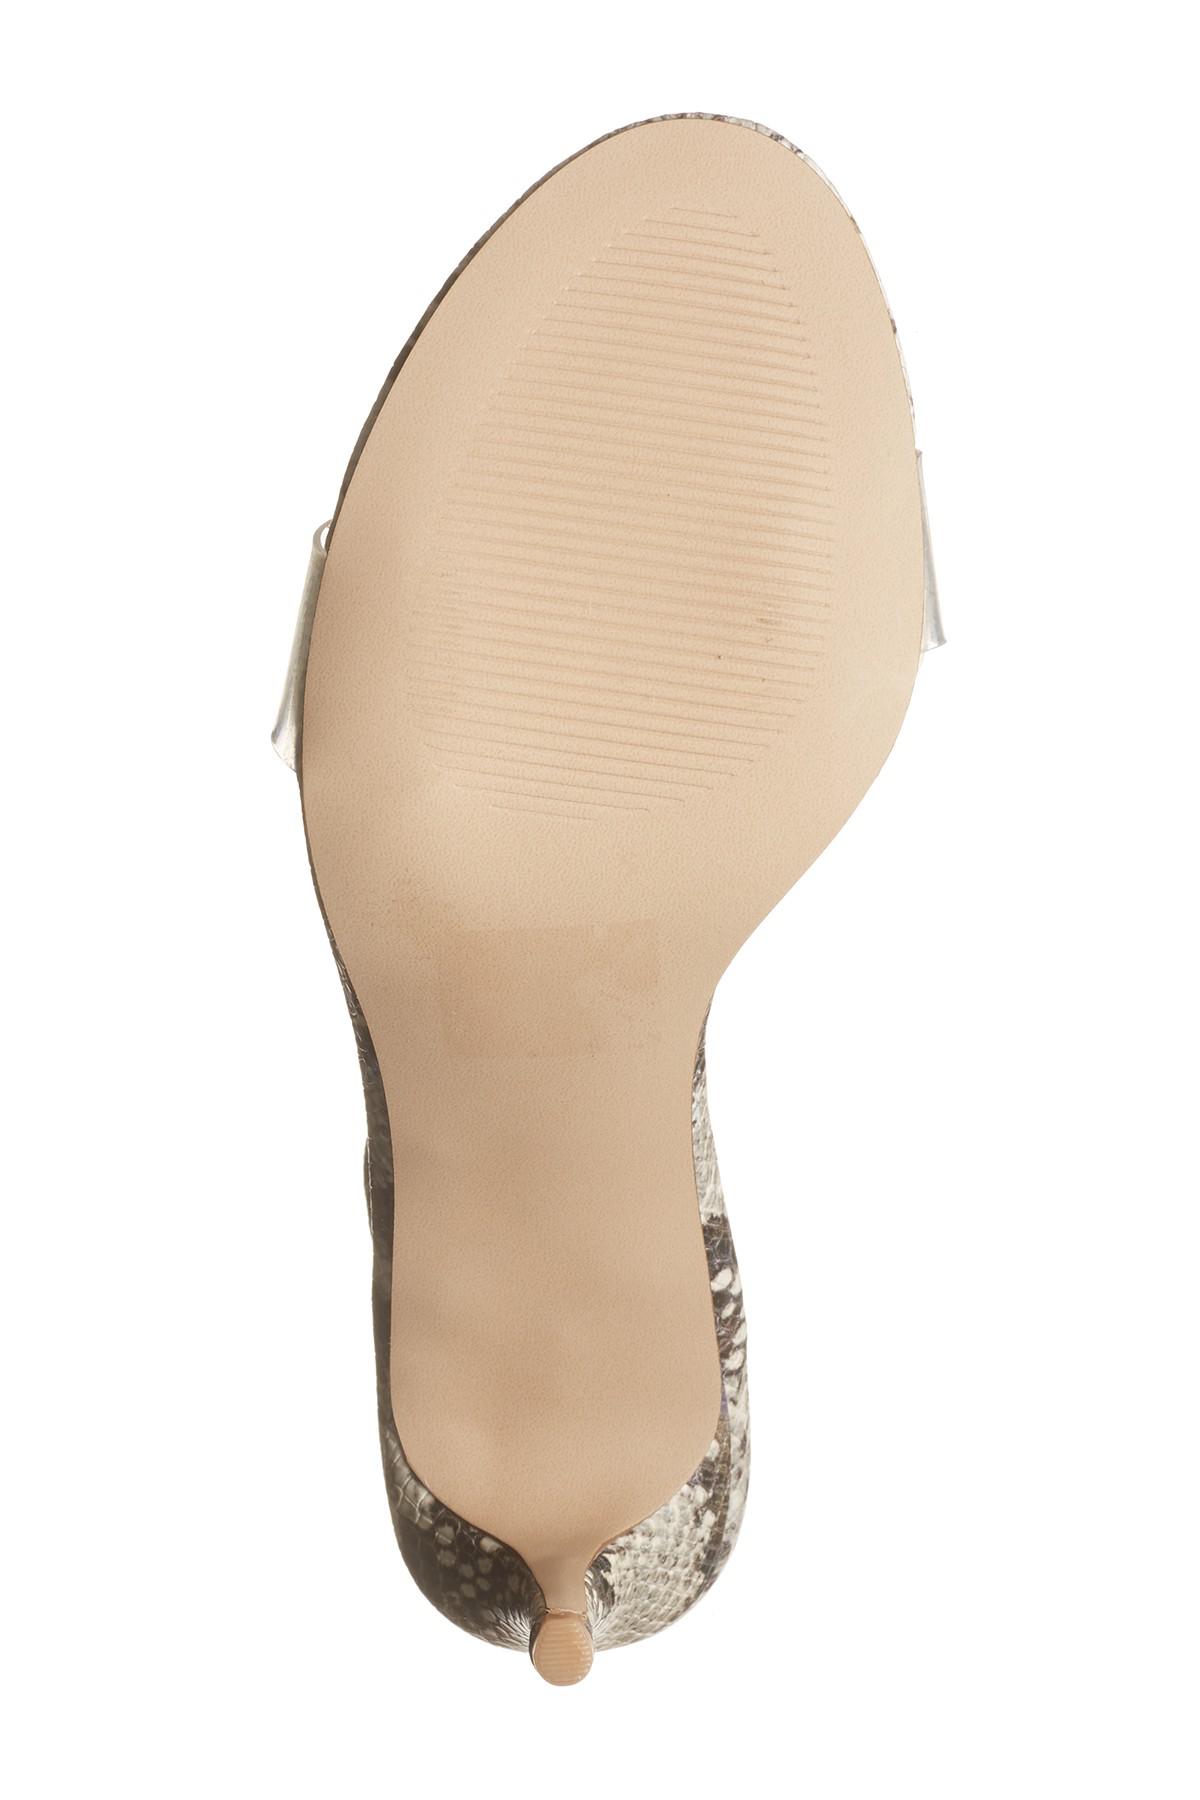 steve madden unveil slingback sandal